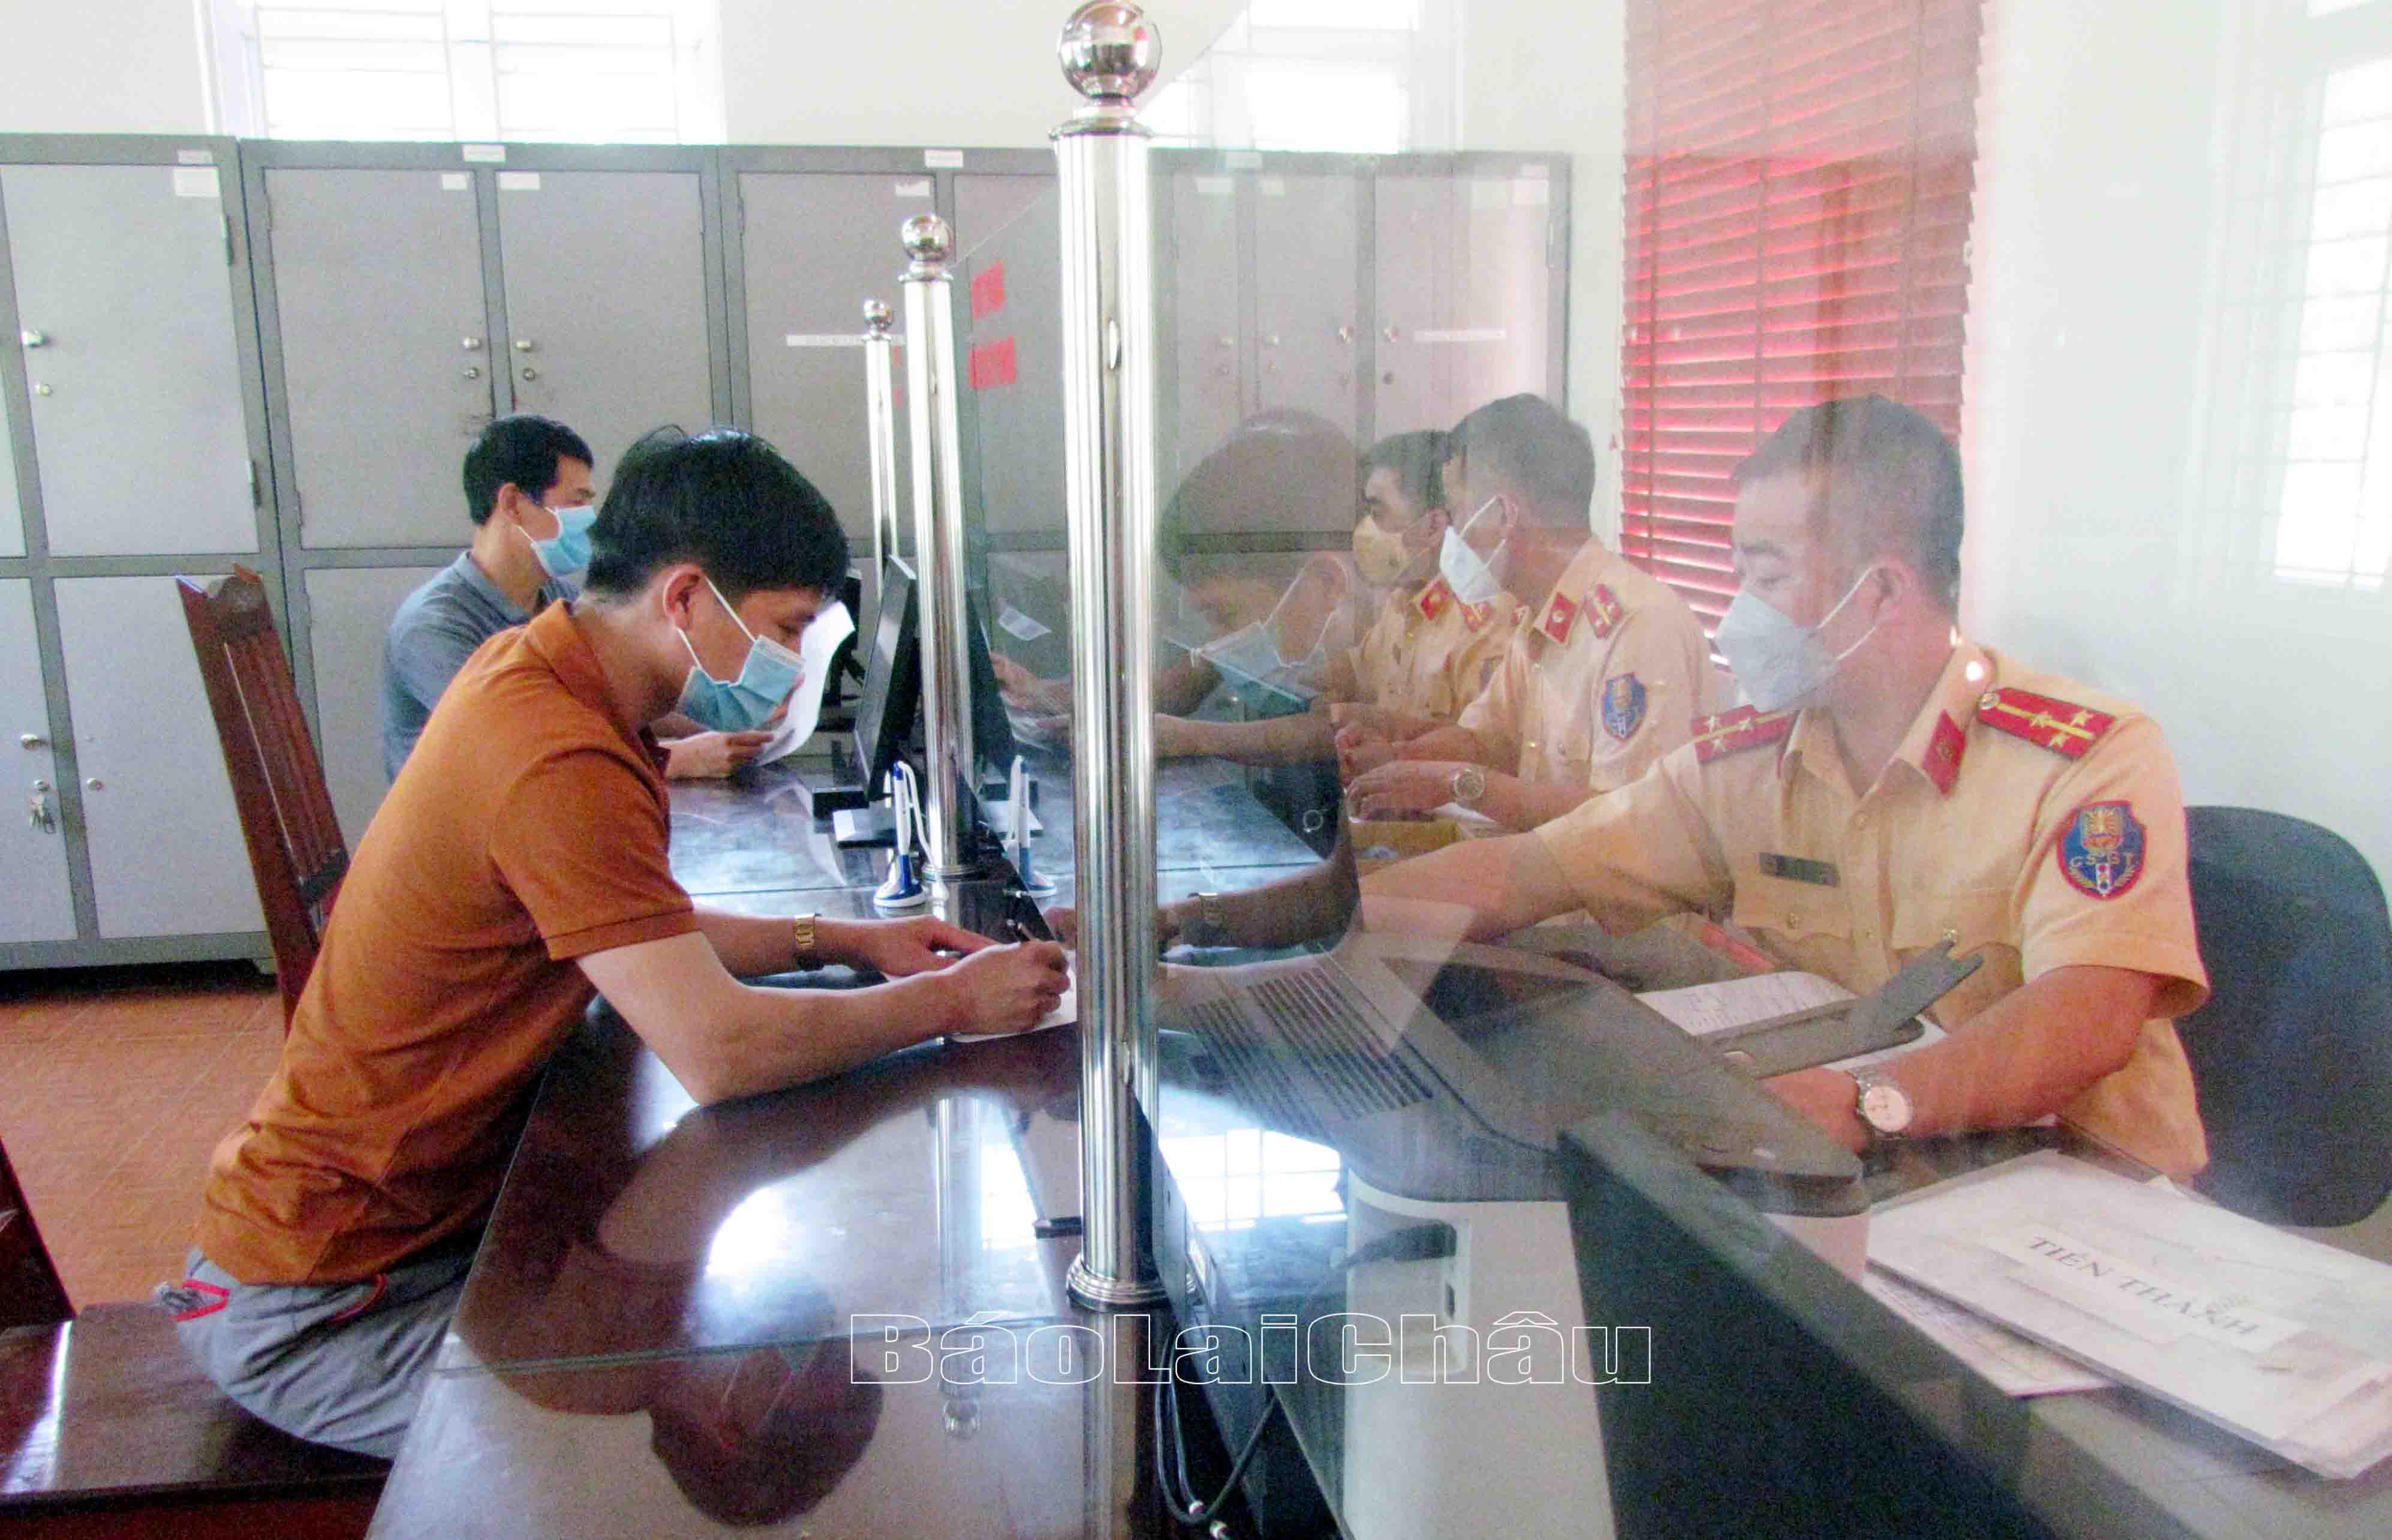 Cán bộ Đội Cảnh sát giao thông trật tự (Công an huyện Phong Thổ) hướng dẫn người dân làm thủ tục đăng ký xe máy.